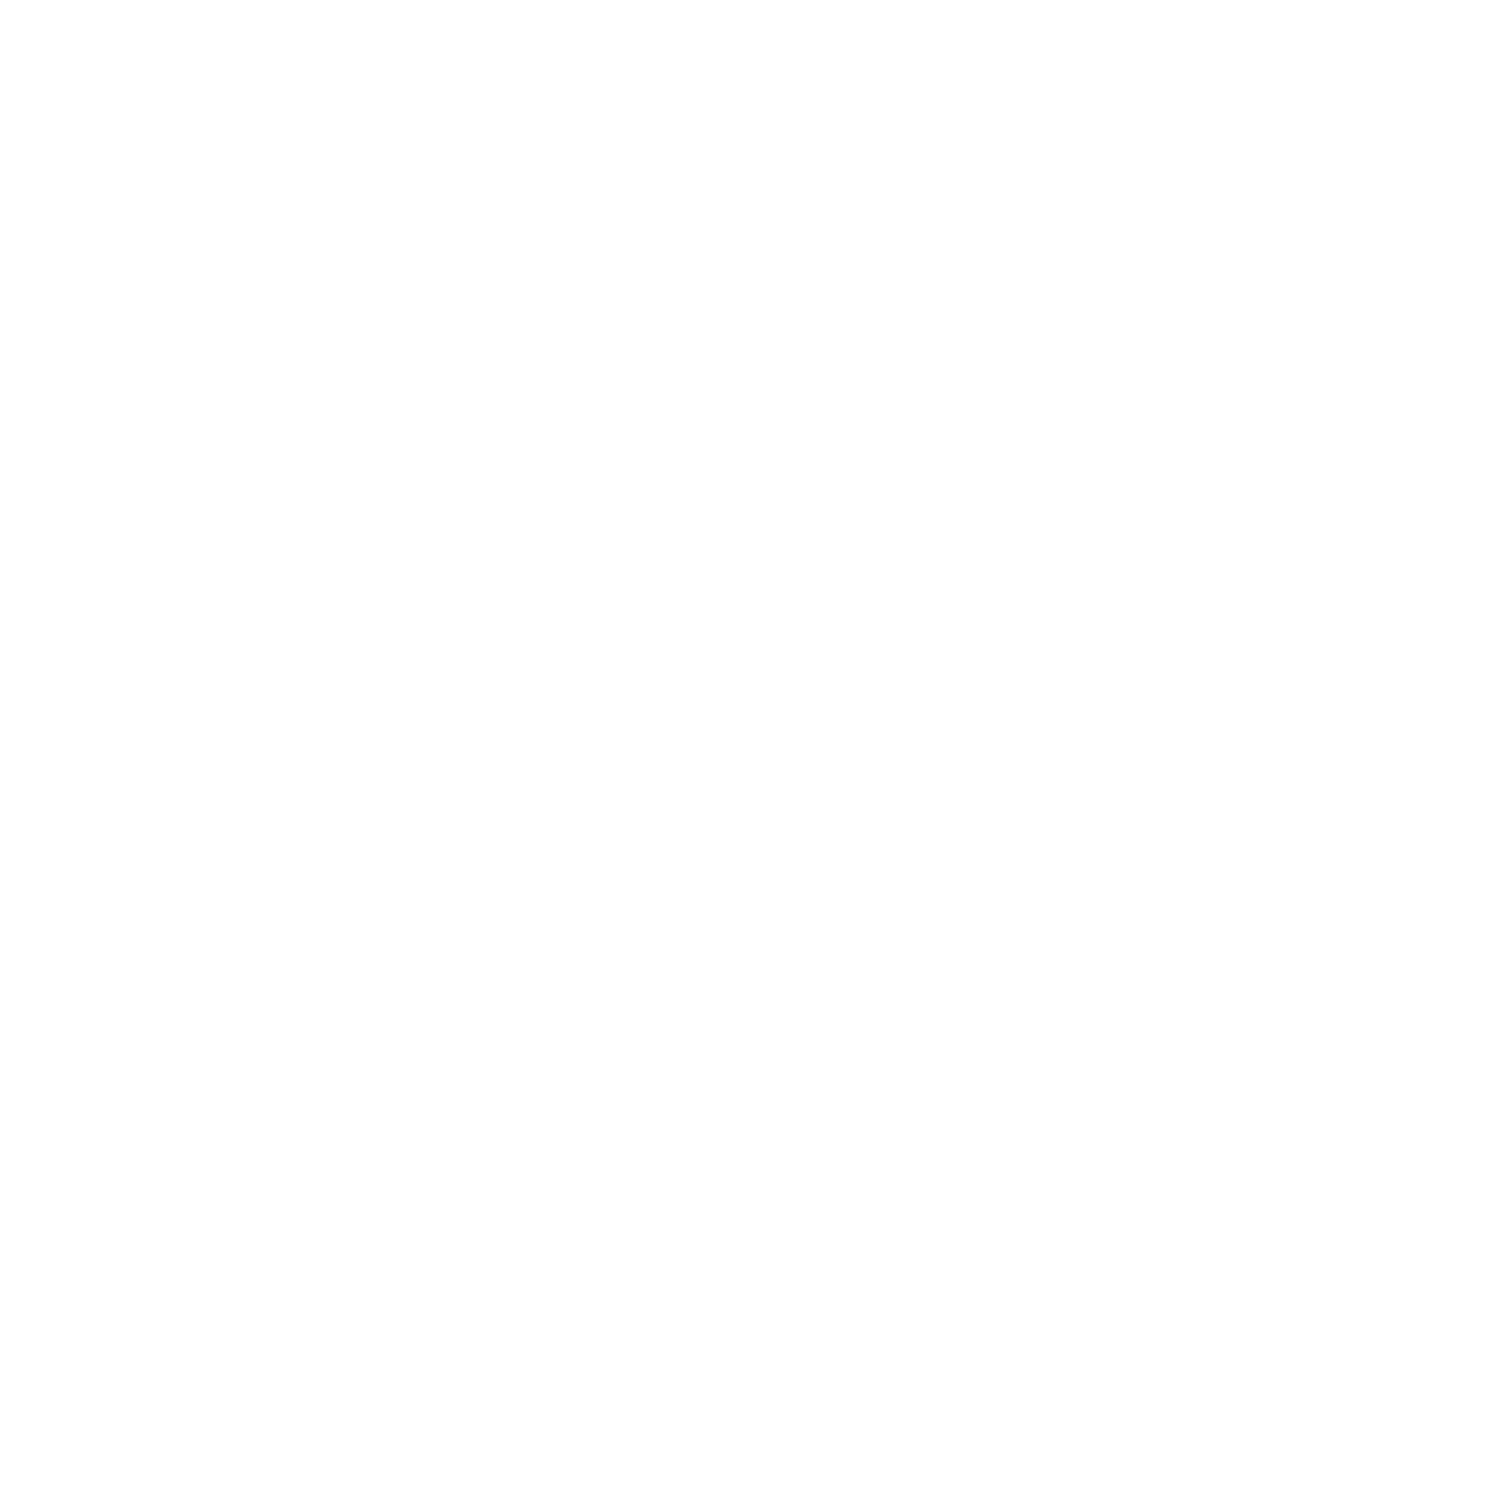 W.E. Garnett Christian Academy